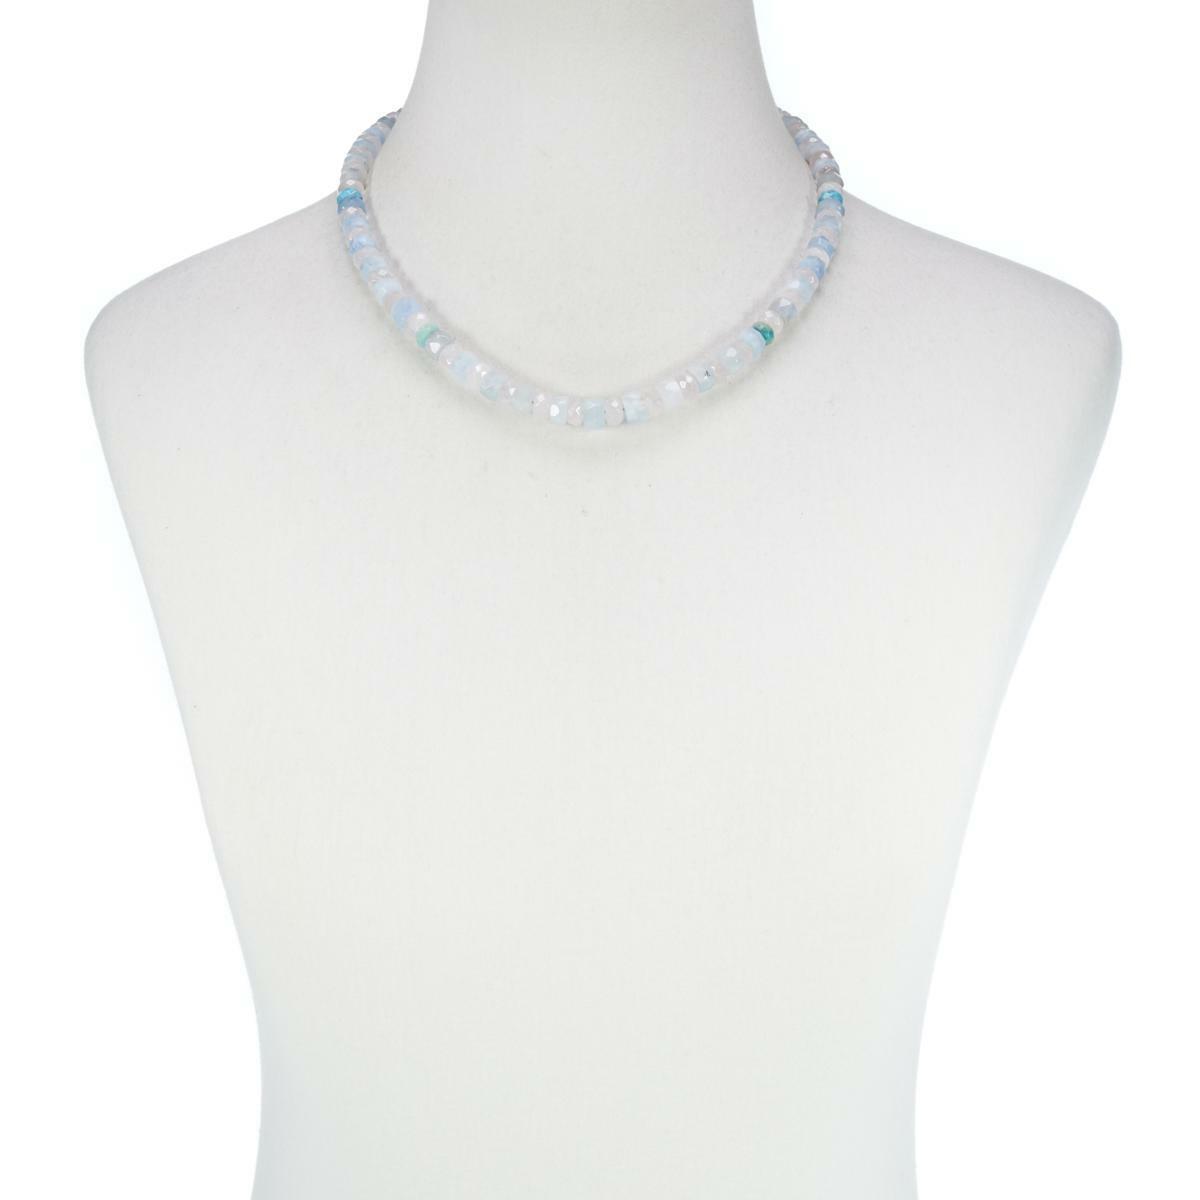 Jay King Aquamarine, Rose Quartz and Turquoise Bead 18" Necklace.